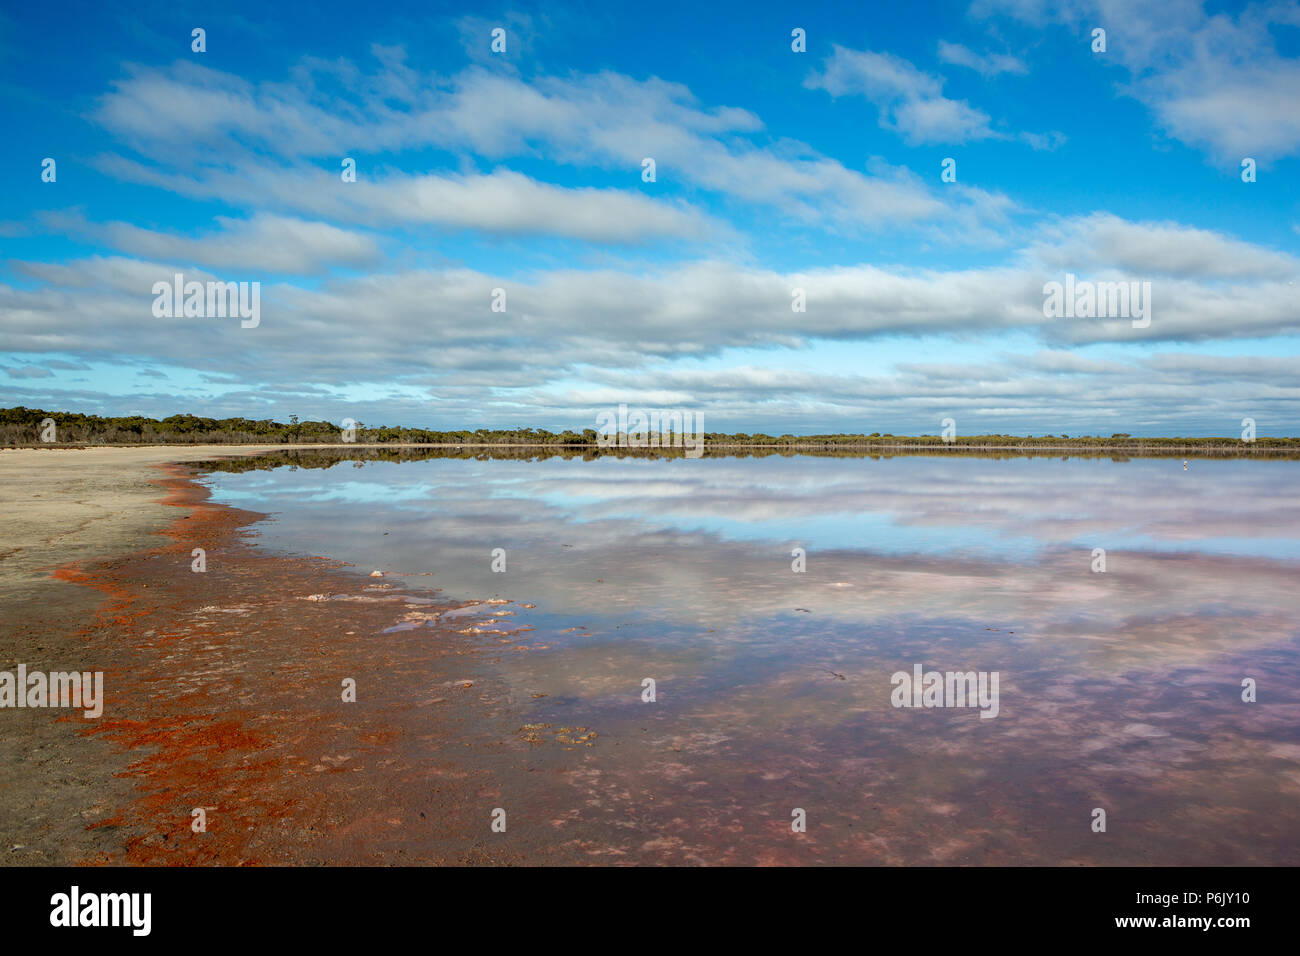 El reflejo perfecto de nubes sobre el Lago Victoria Lochiel Dimboola Australia el 24 de junio de 2018 Foto de stock